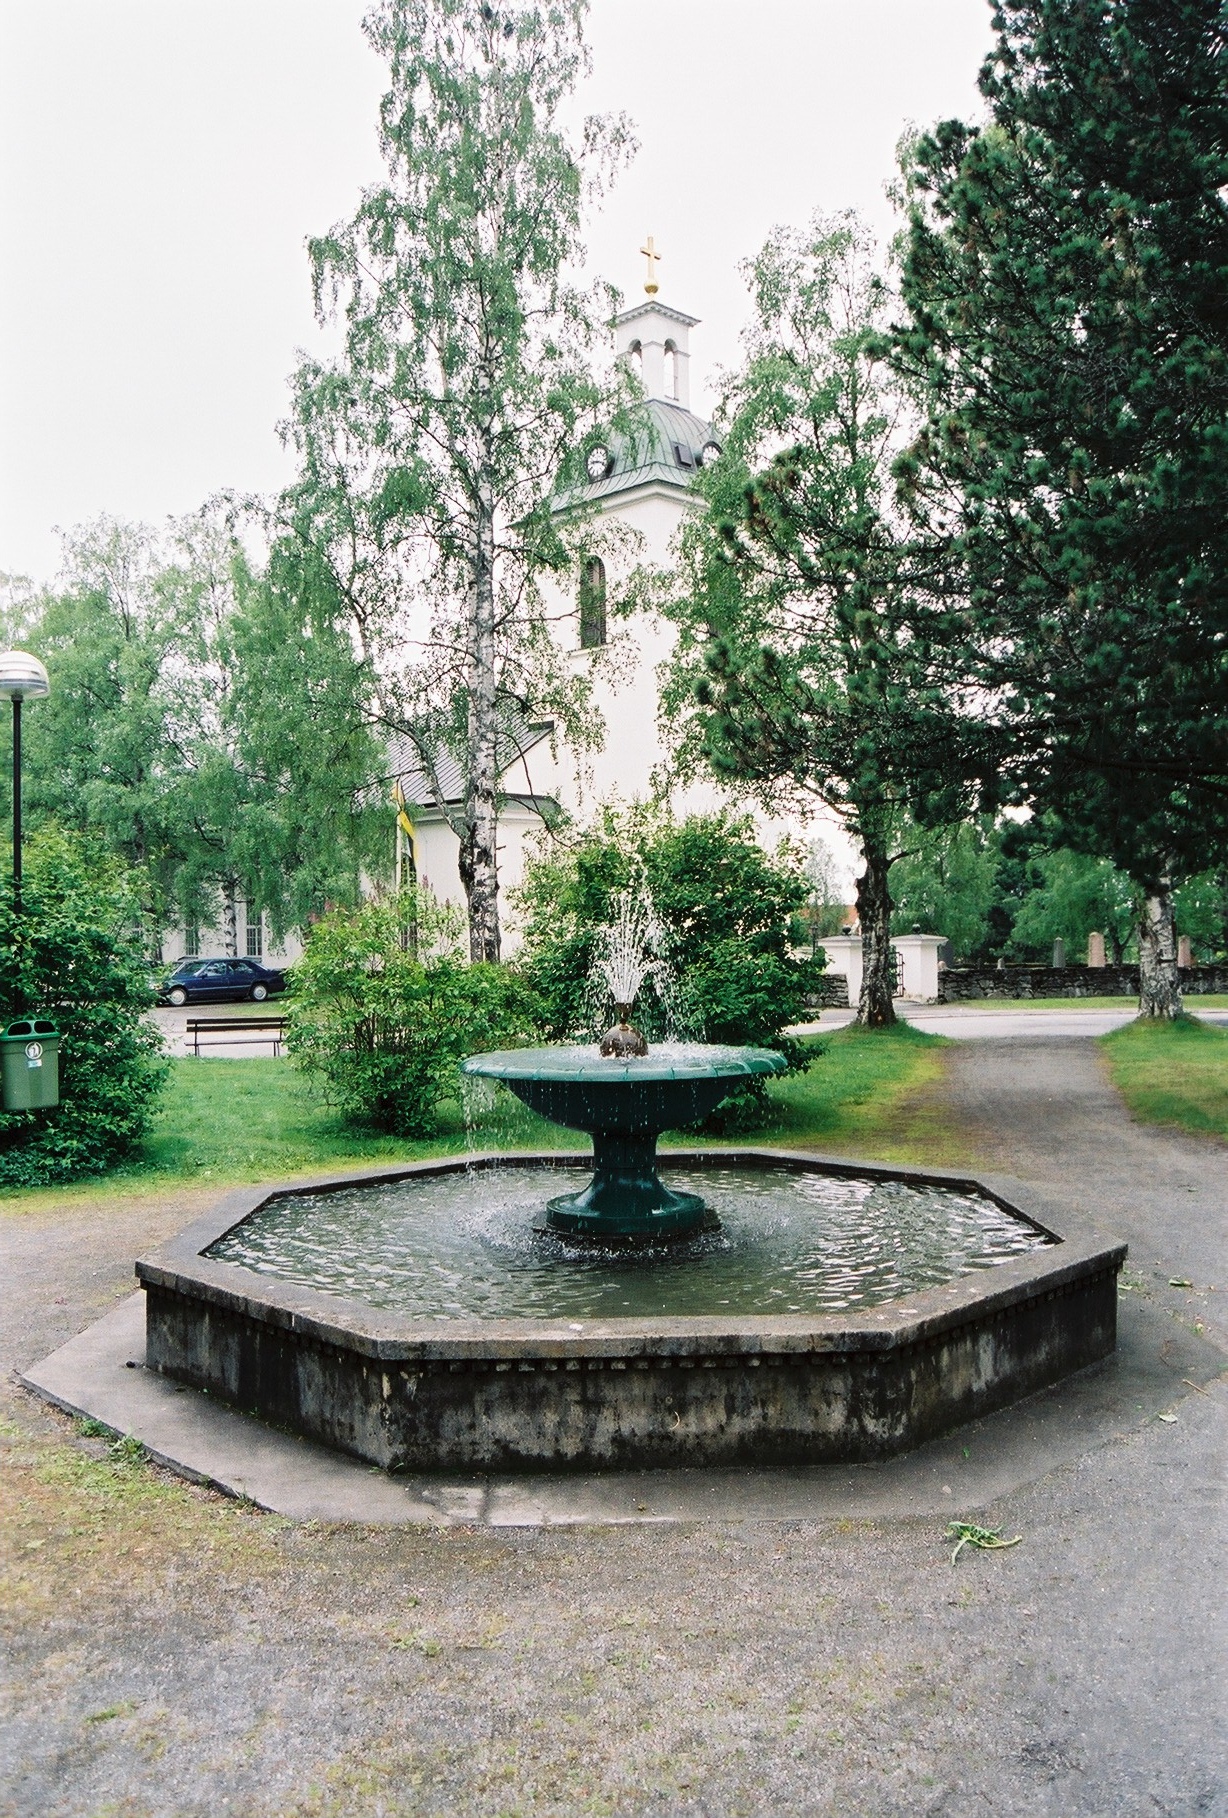 Ströms kyrka med omgivande miljö, vy från nordöst. 

Bilderna är tagna av Martin Lagergren & Emelie Petersson, bebyggelseantikvarier vid Jämtlands läns museum, i samband med inventeringen, 2004-2005.